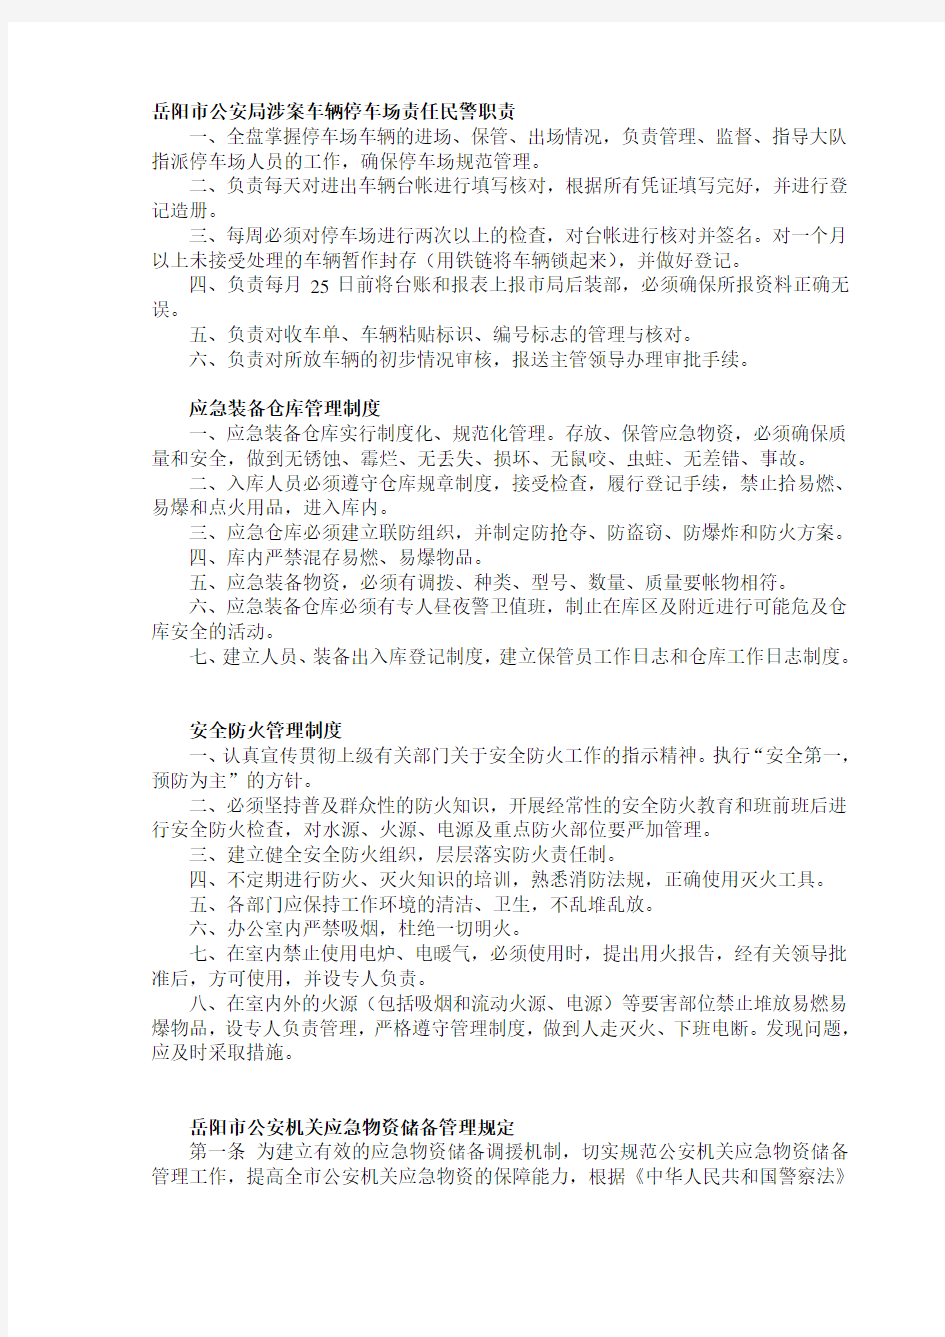 岳阳市公安局涉案车辆停车场责任民警职责